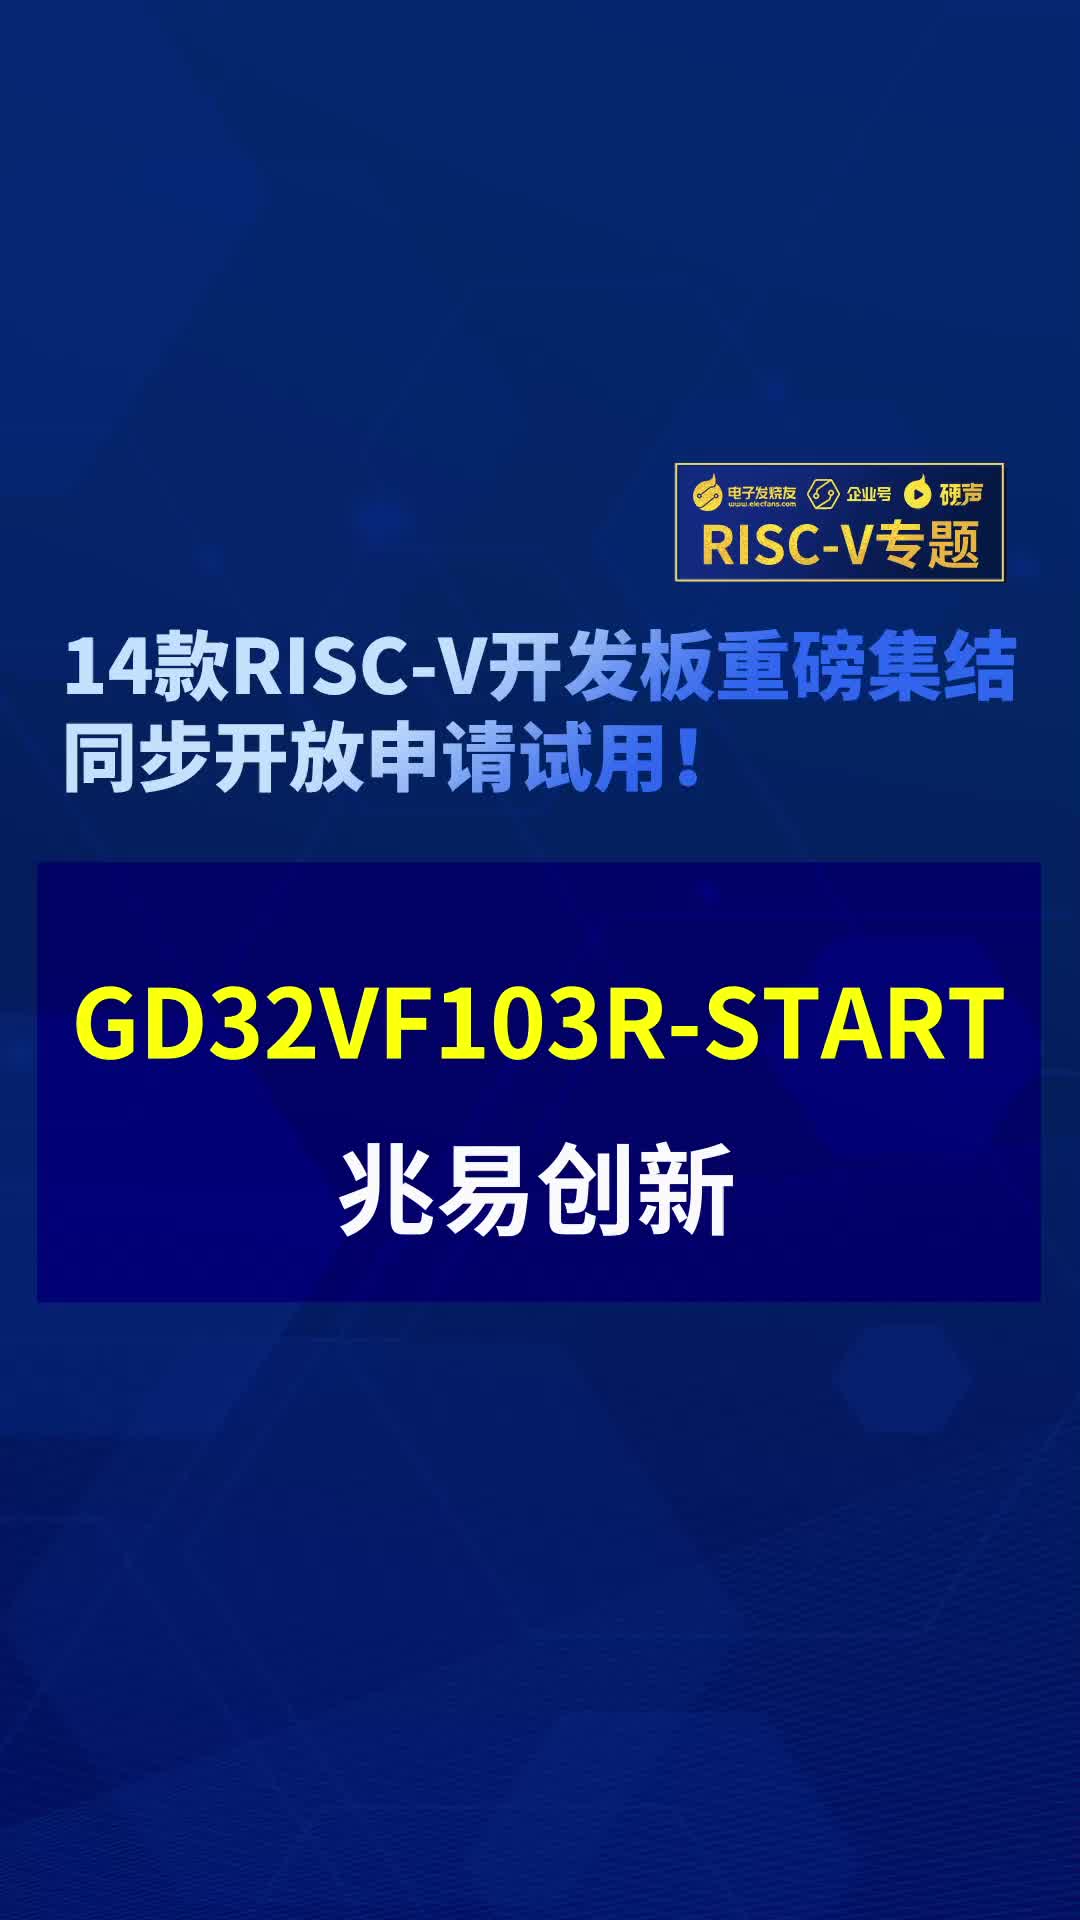 【RISC-V專題】兆易創新GD32VF103R-START免費試用#RISC-V開發板評測 